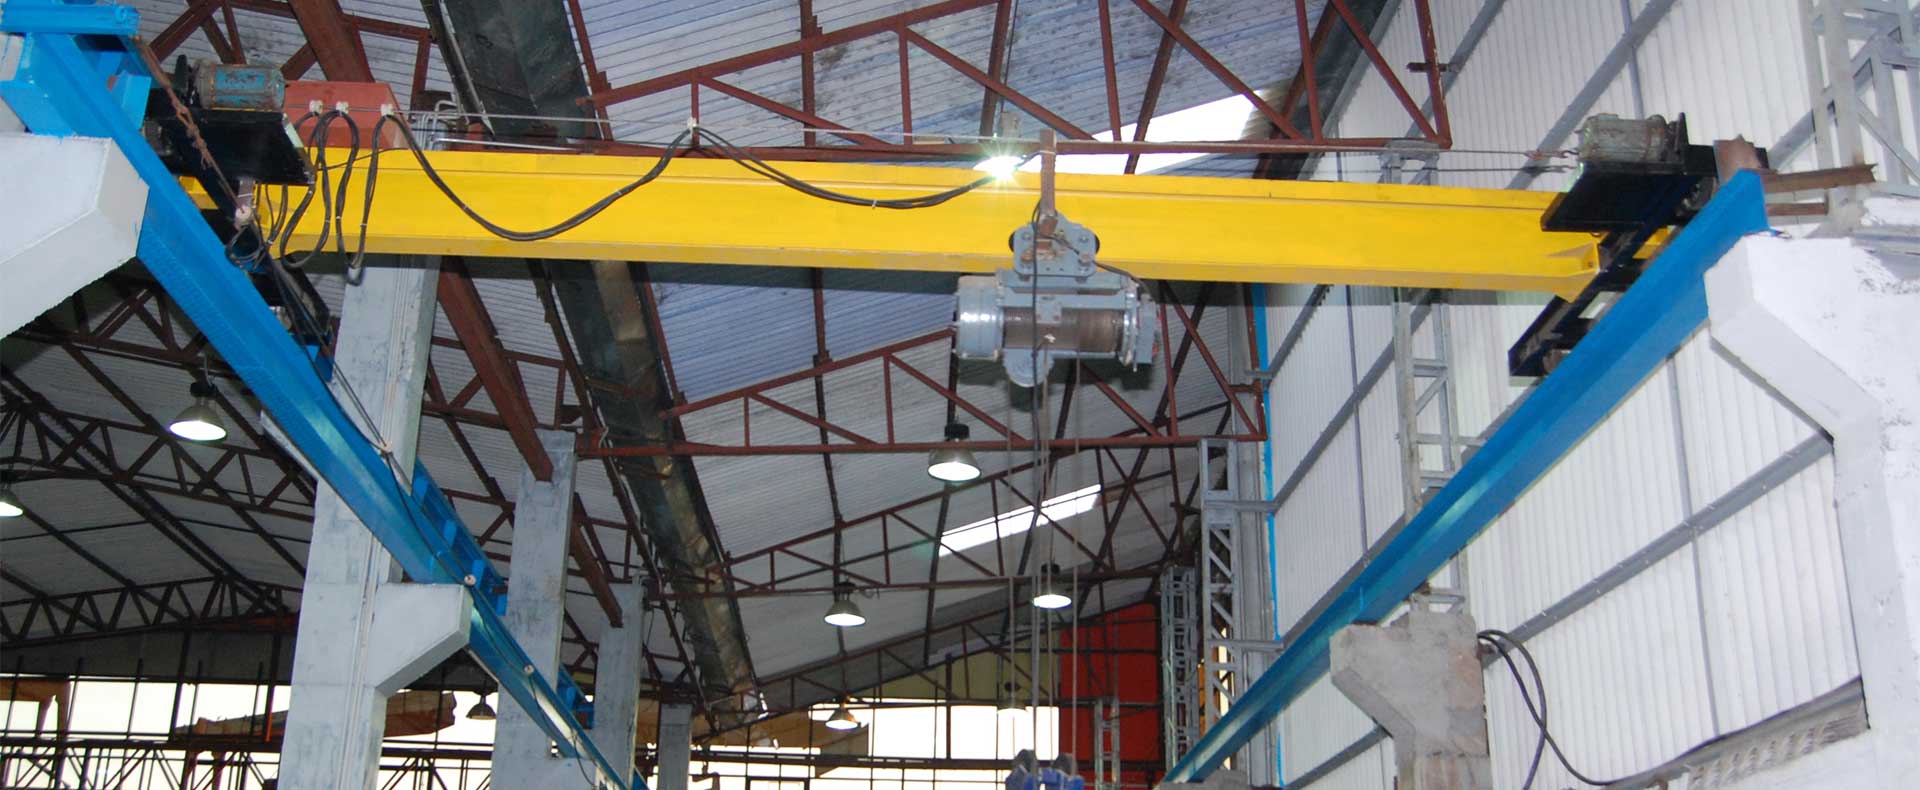 Hoist Crane EOT HOT Crane Goods Lift Passenger Lift Material 